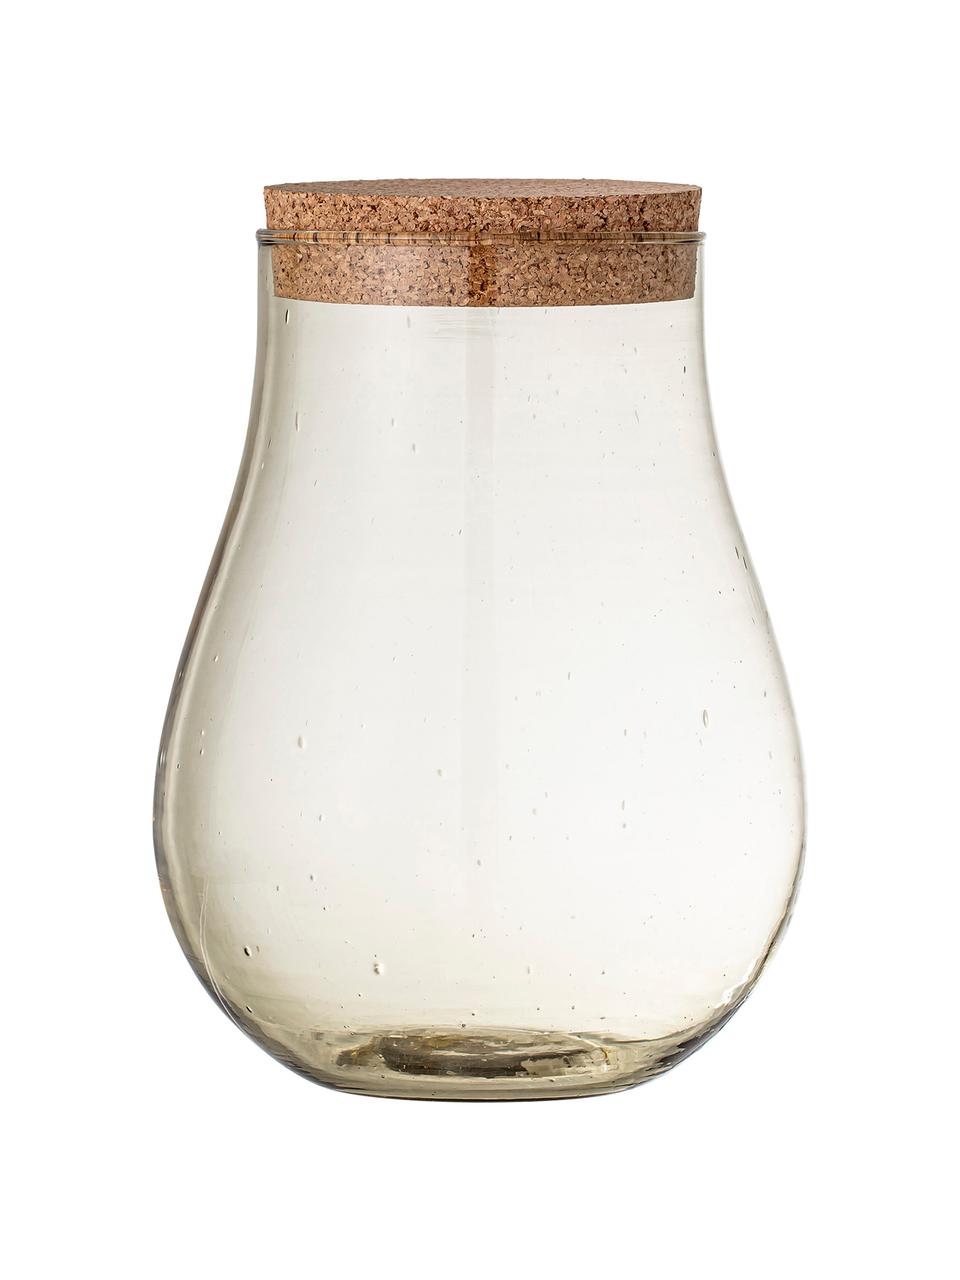 Großes bauchiges Aufbewahrungsglas Casie aus recyceltem Glas, Deckel: Kork, Braun, Ø 18 x H 26 cm